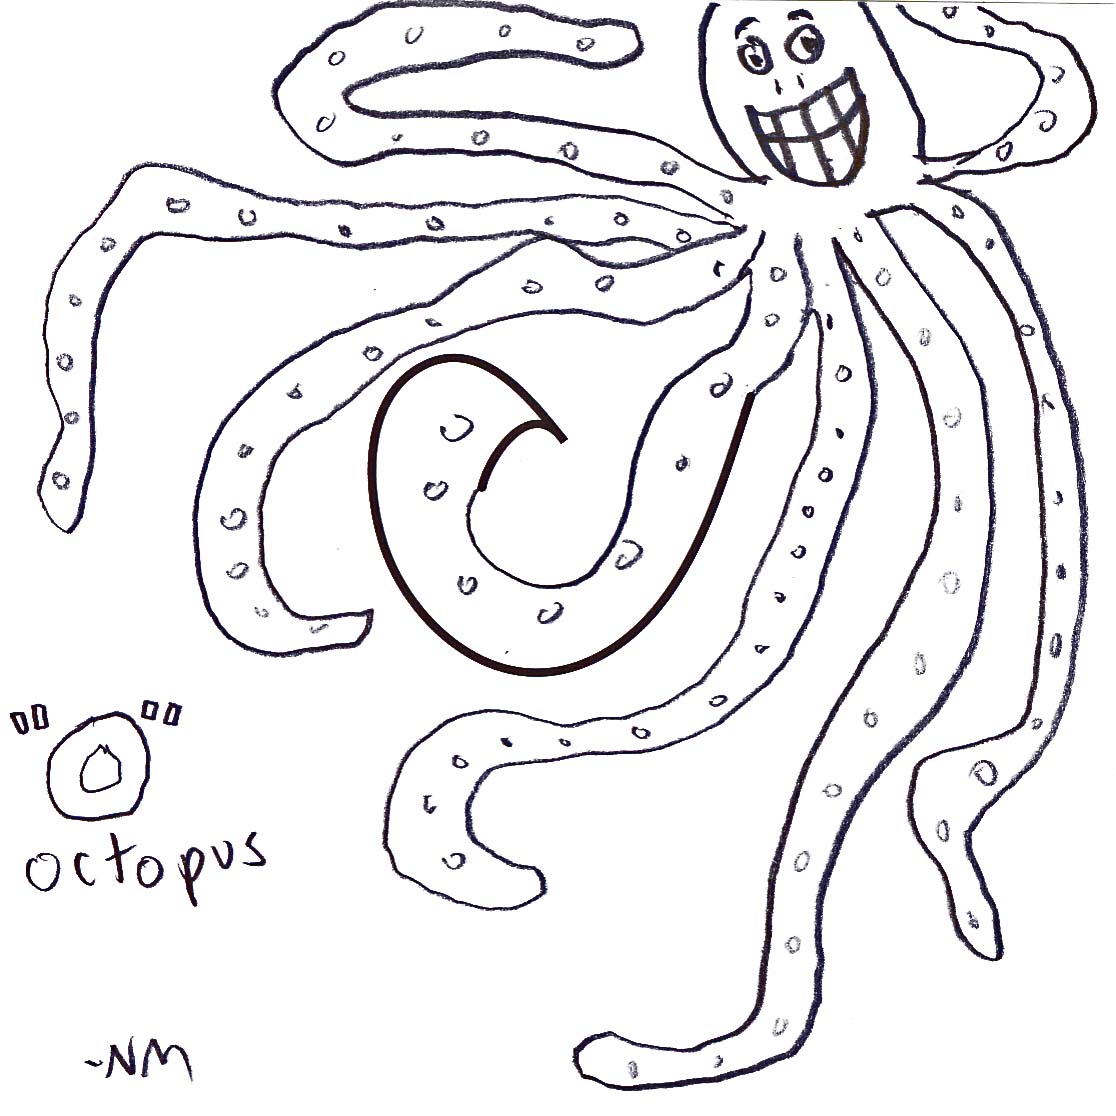 "O" Octopus